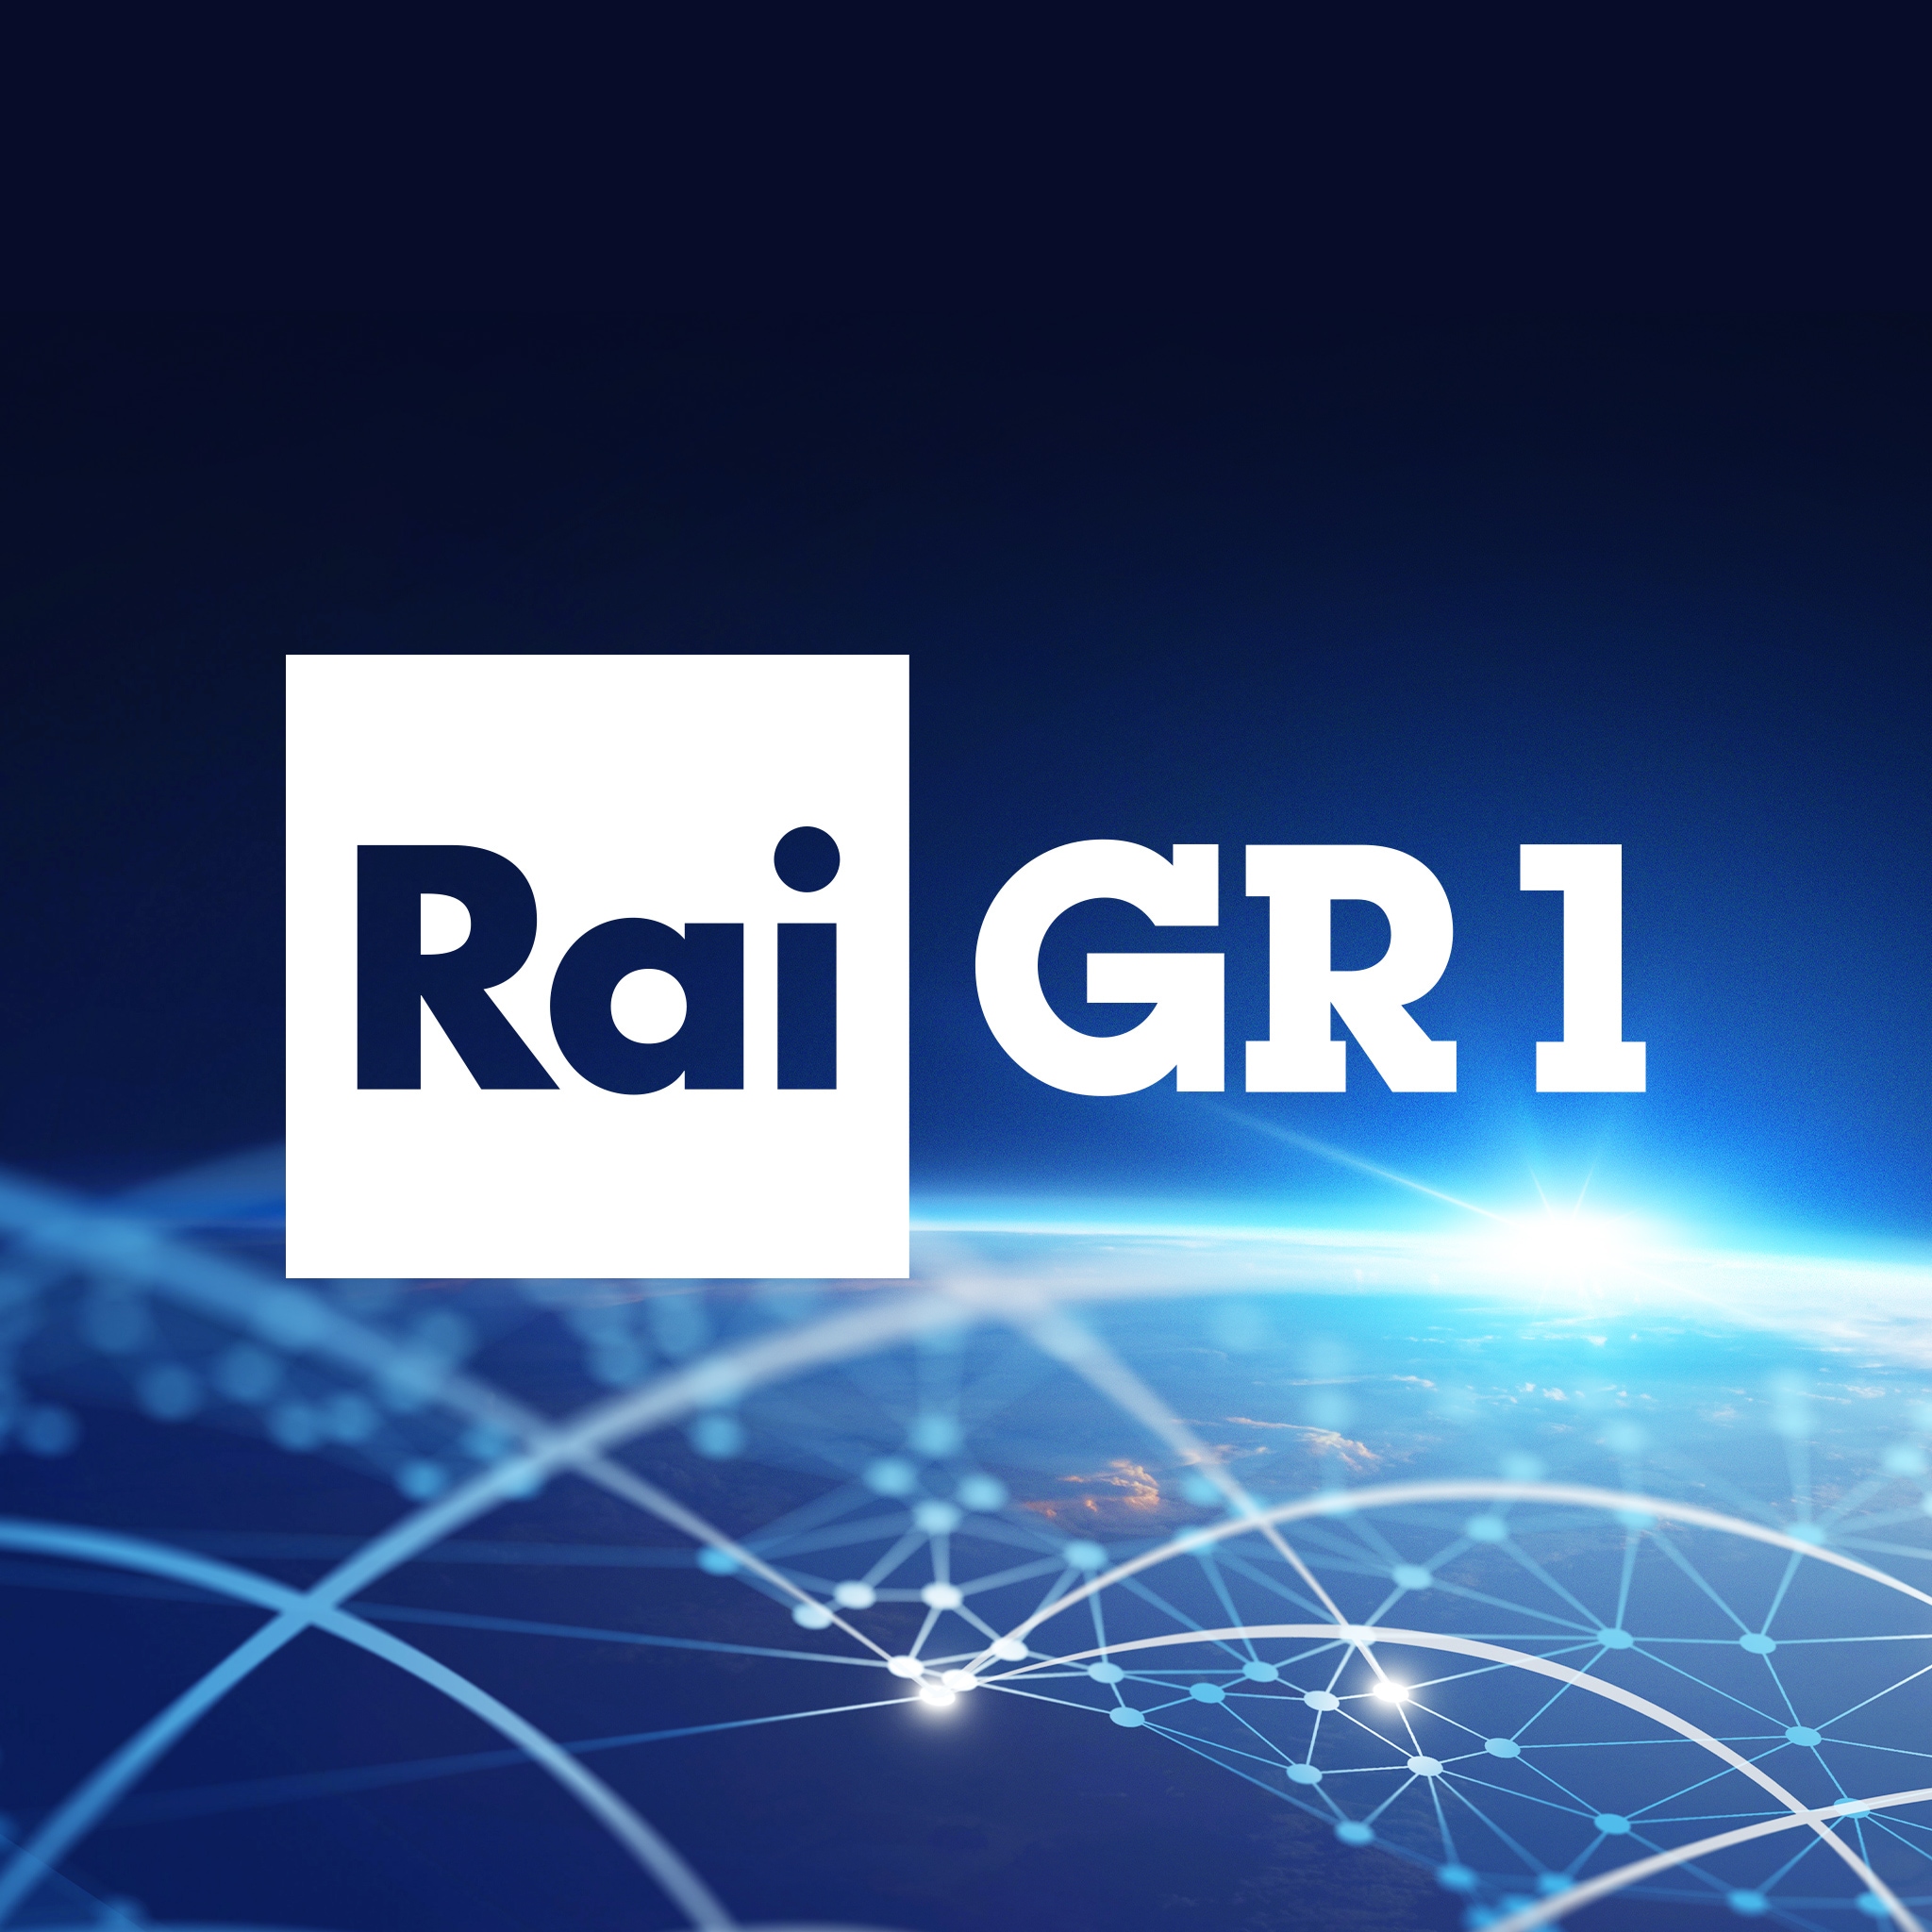 Rai Radio 1 Speciale Gr1 - Festa Della Liberazione